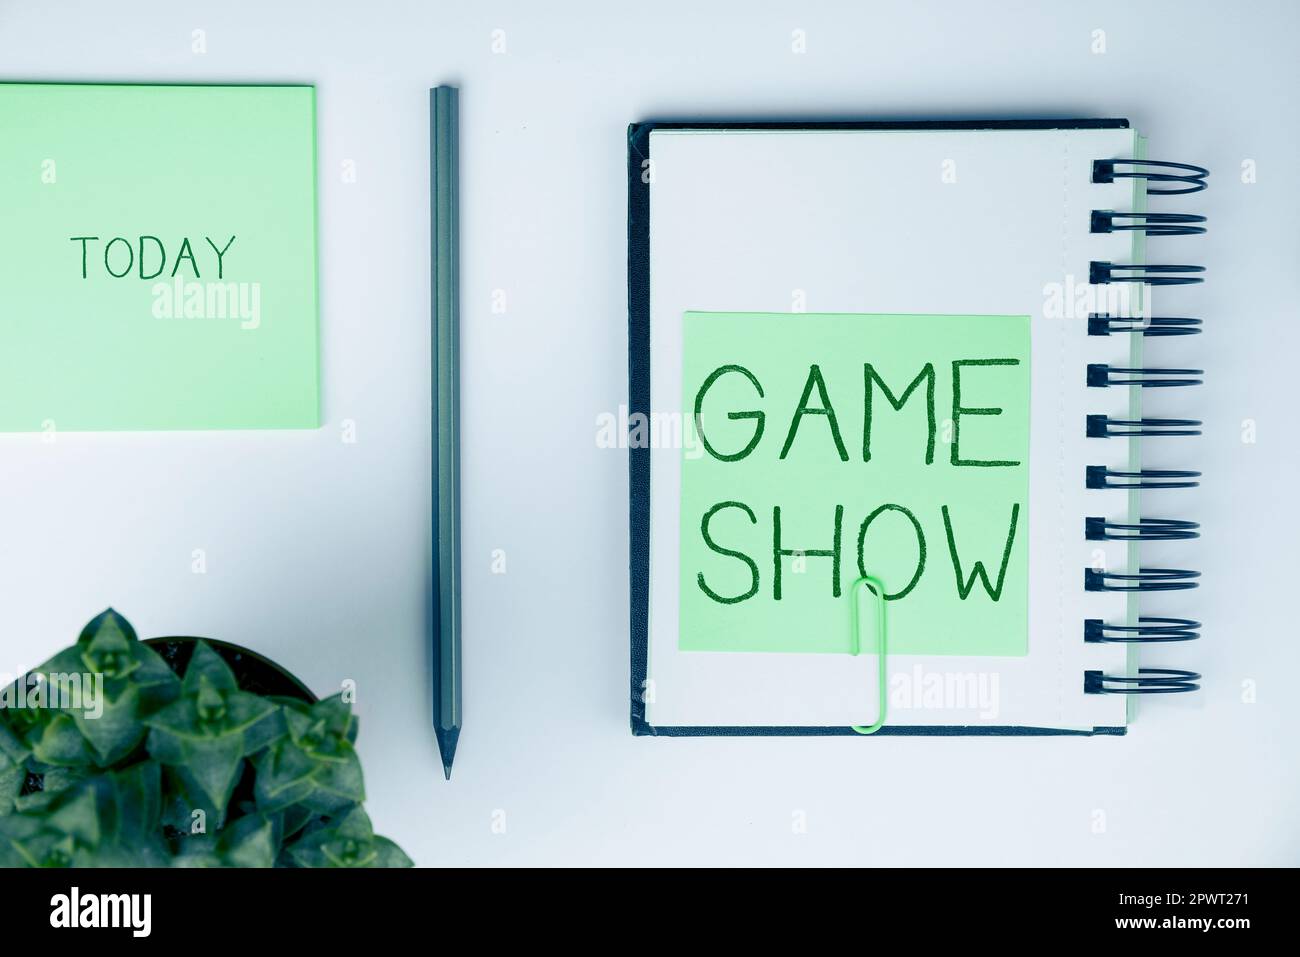 Textunterschrift mit Game Show, Business Concept Program im Fernsehen oder Radio mit Spielern, die Preise gewinnen Stockfoto